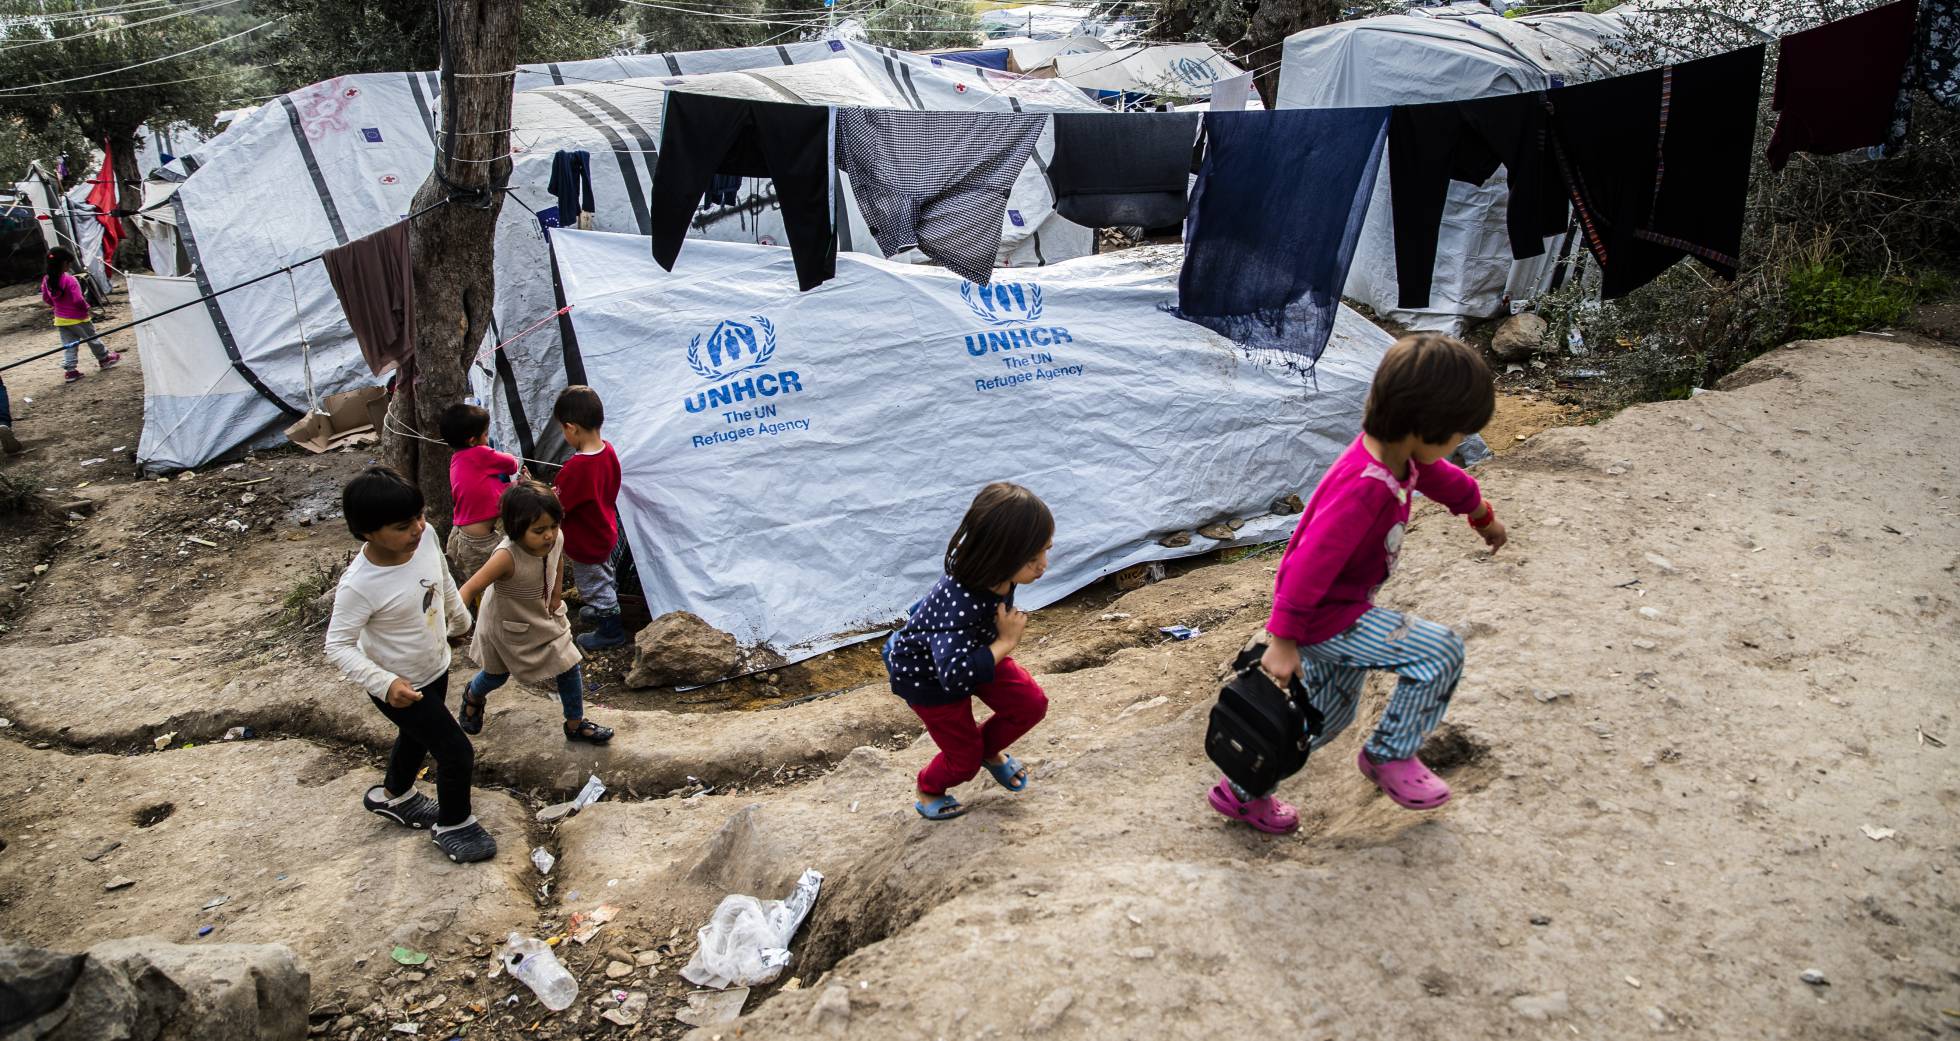 Fotos: Refugiados: Moria, el infierno en Europa | Internacional | EL PAÍS